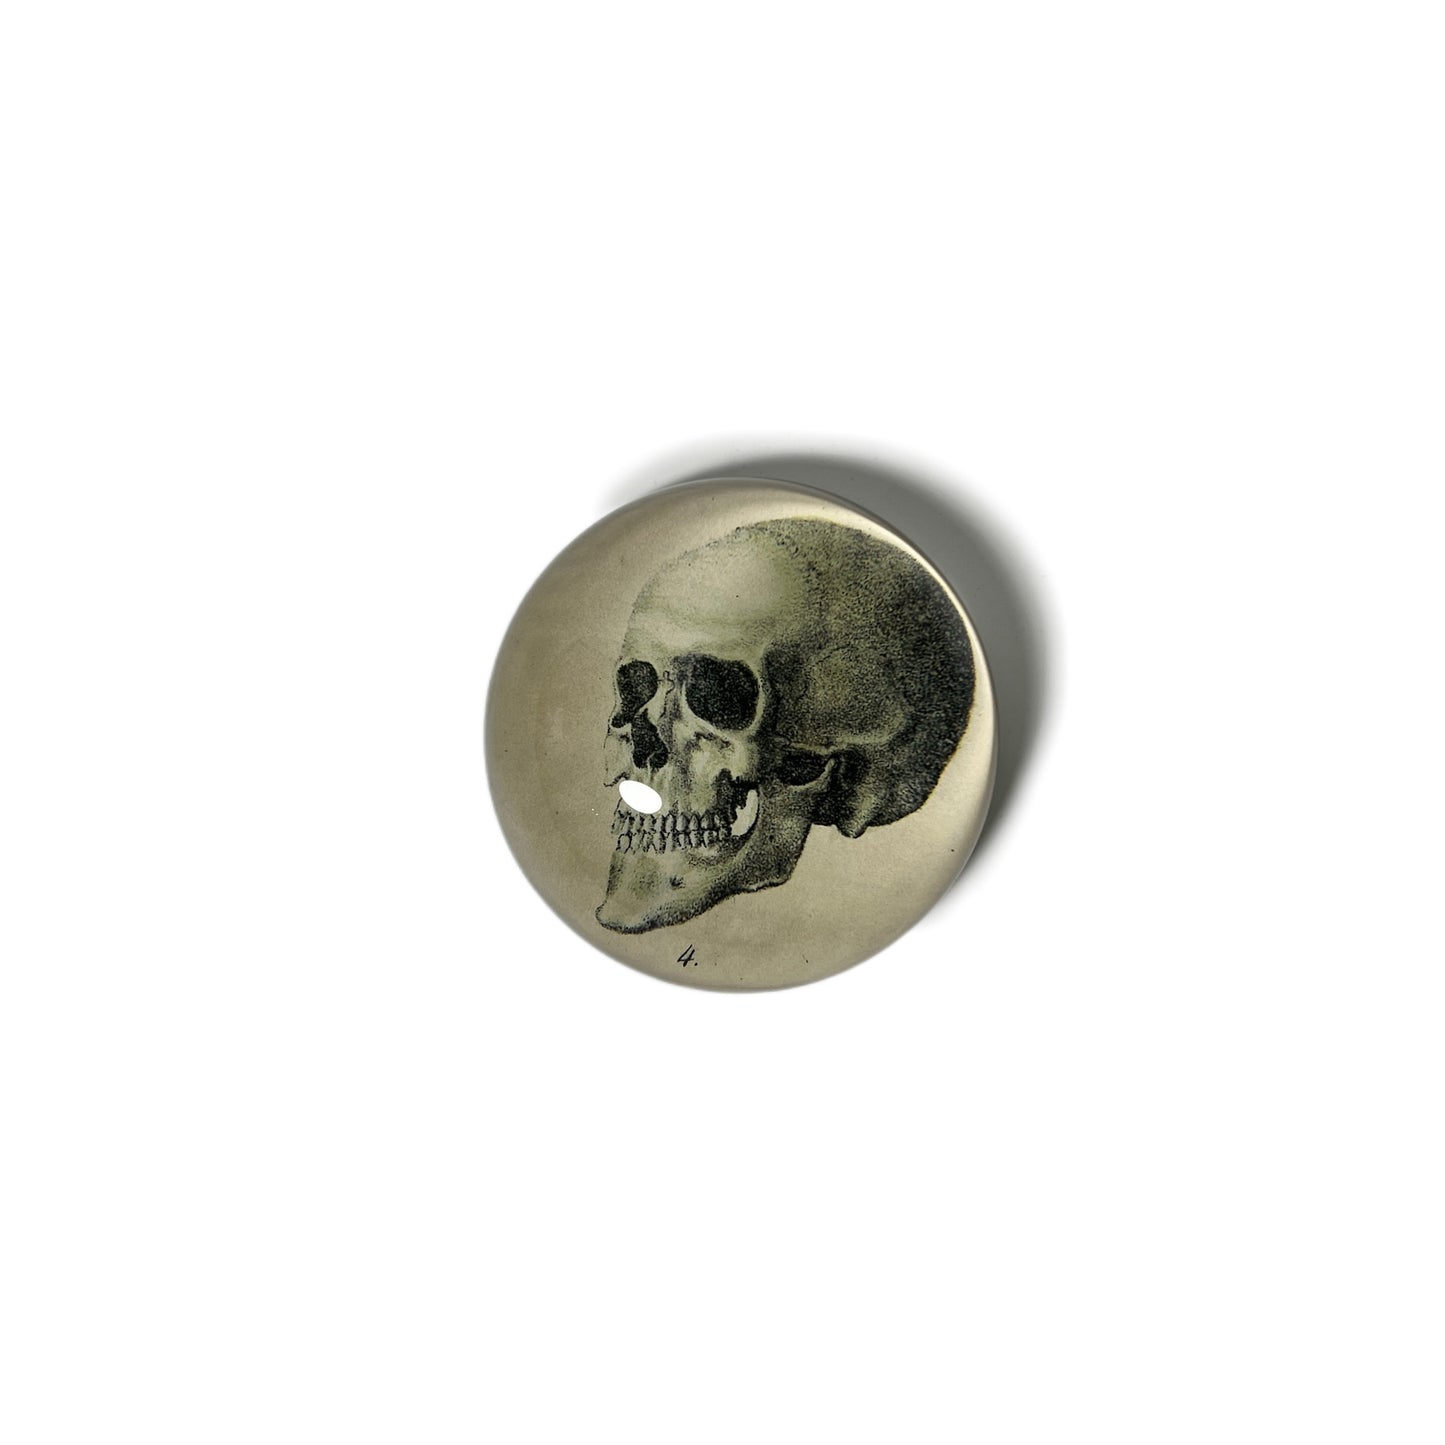 【JOHN DERIAN】デコパージュペーパーウェイト The Skull/スカル